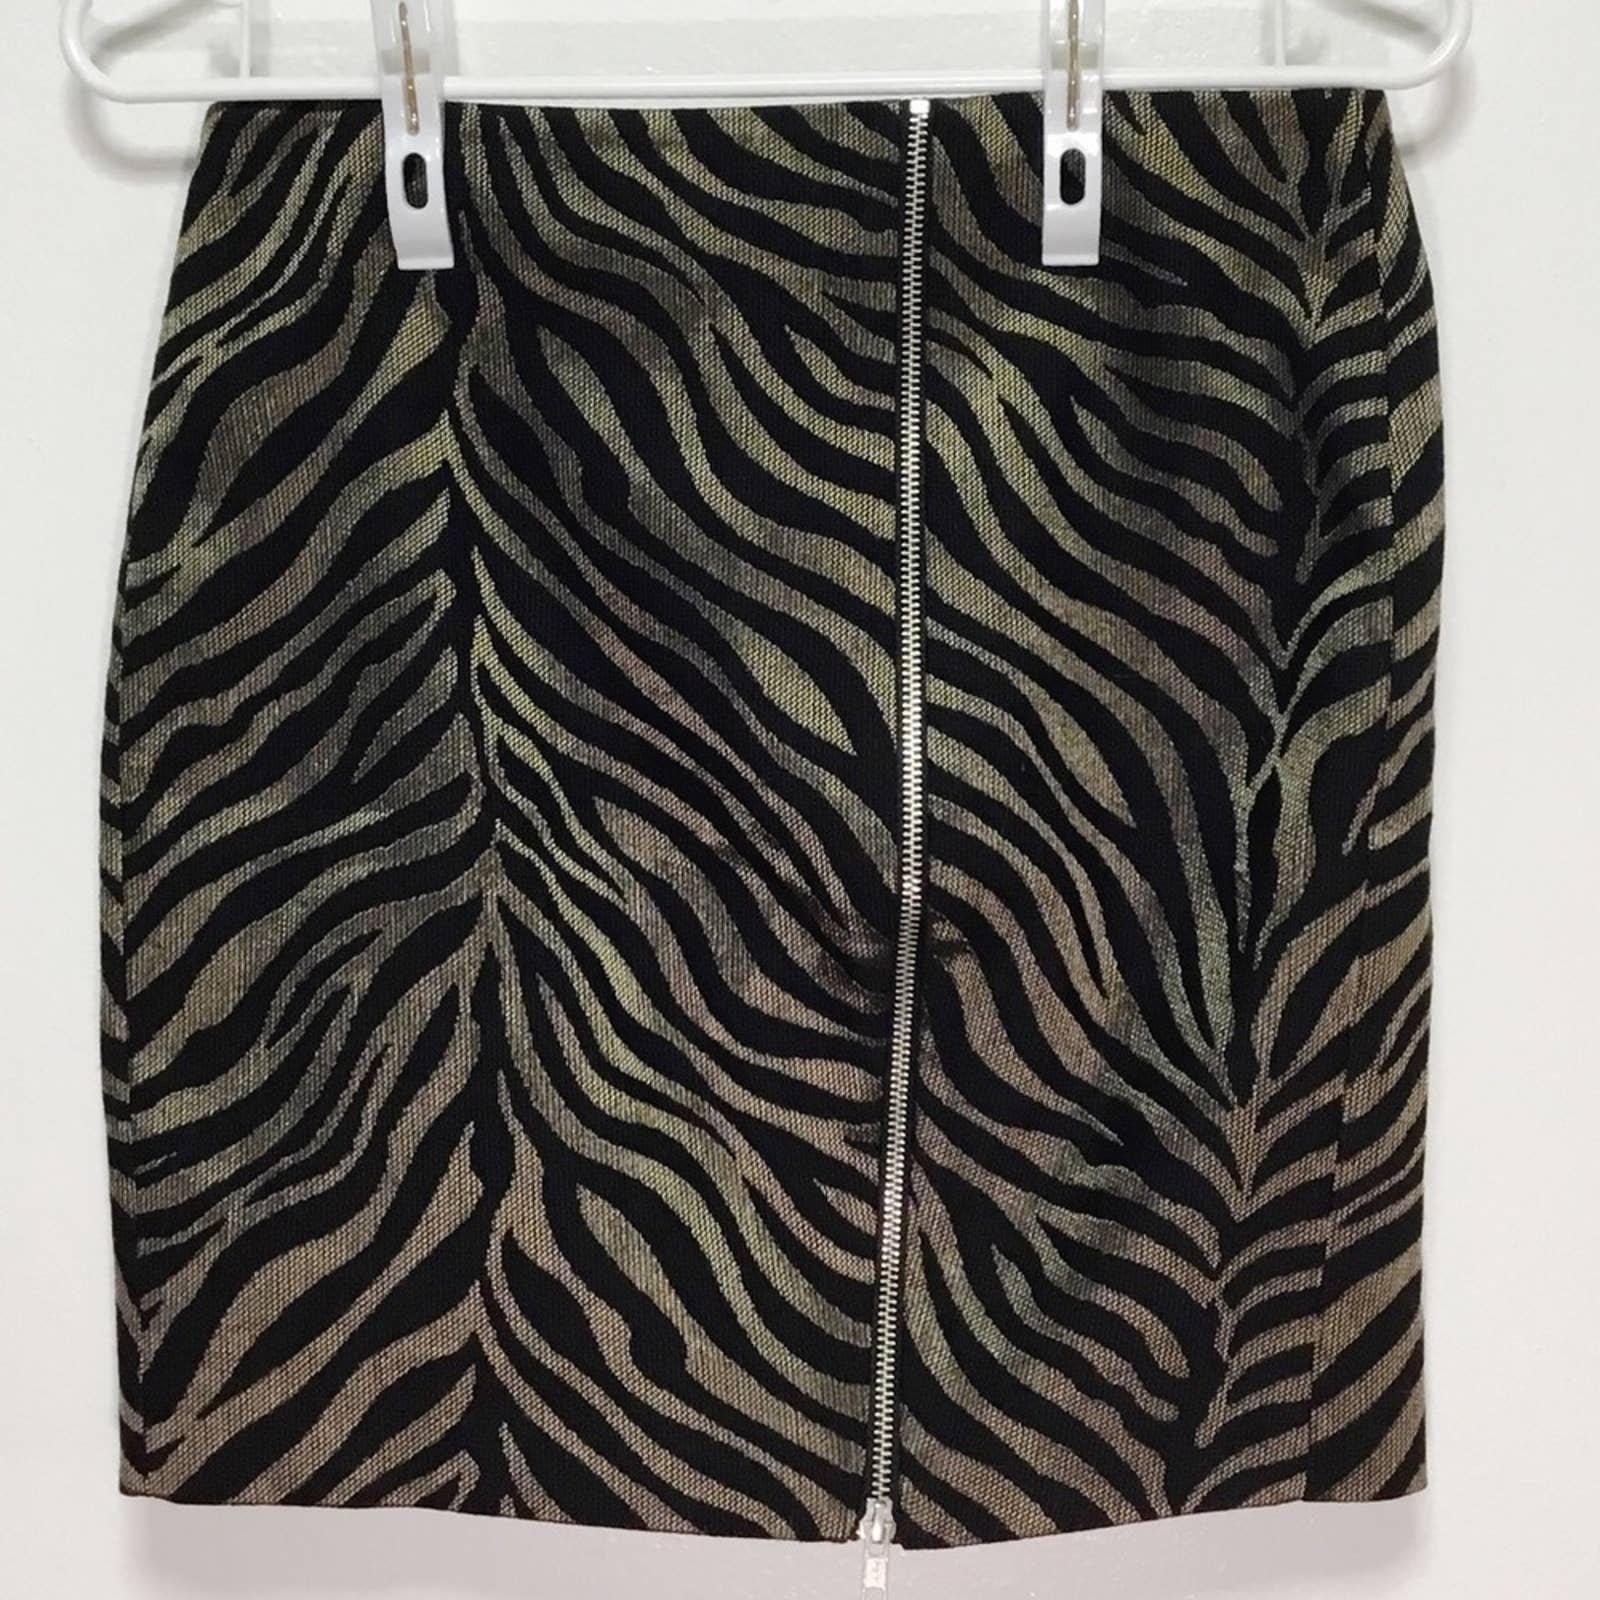 Beautiful The Kooples Tiger Zipper Mini Skirt hFTPX5z0w Great